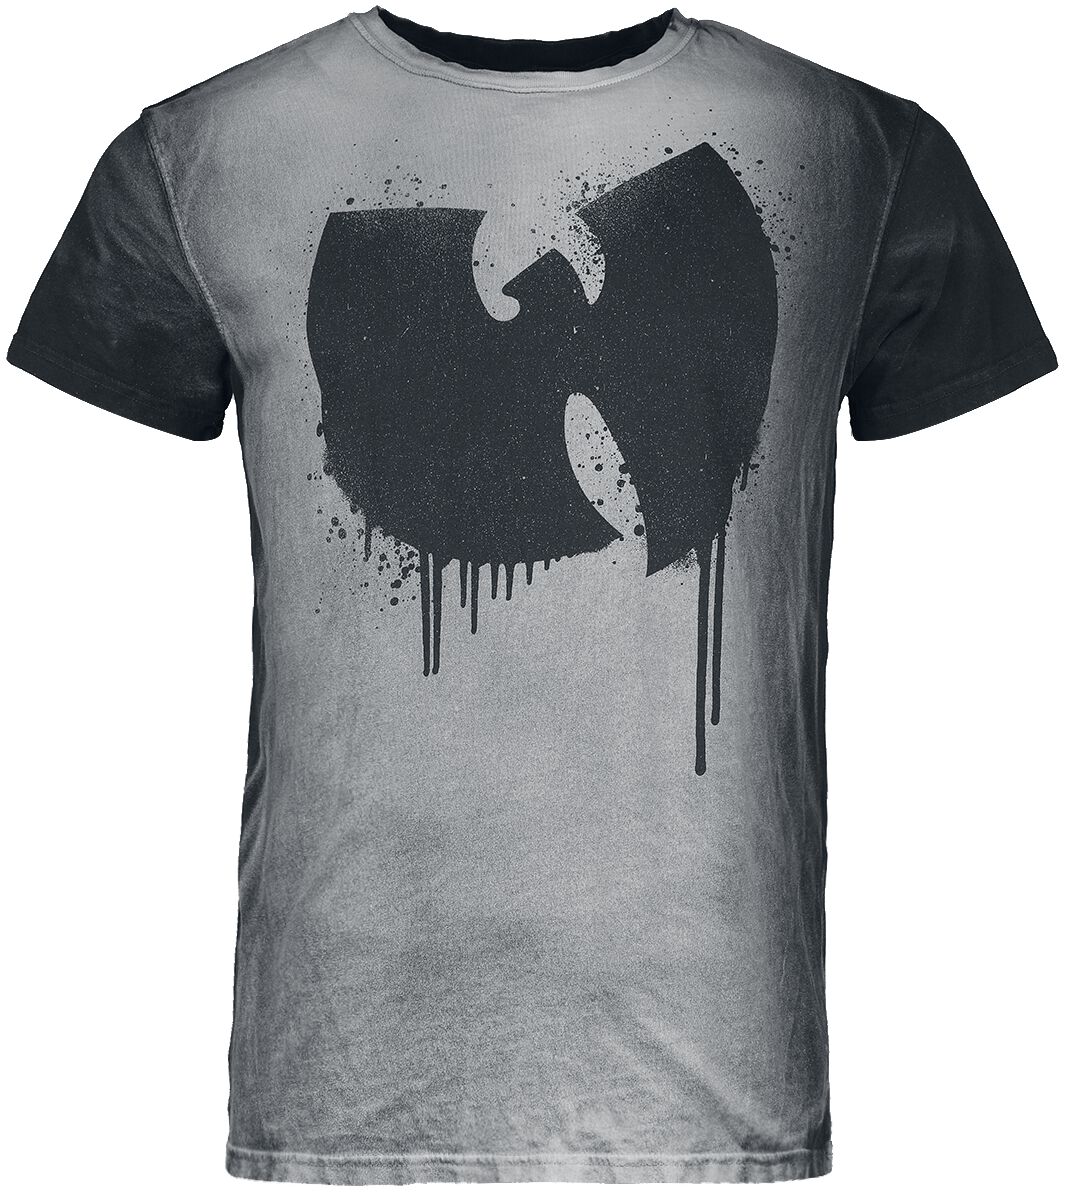 Wu-Tang Clan T-Shirt - S bis XXL - für Männer - Größe S - hellgrau/schwarz  - Lizenziertes Merchandise!